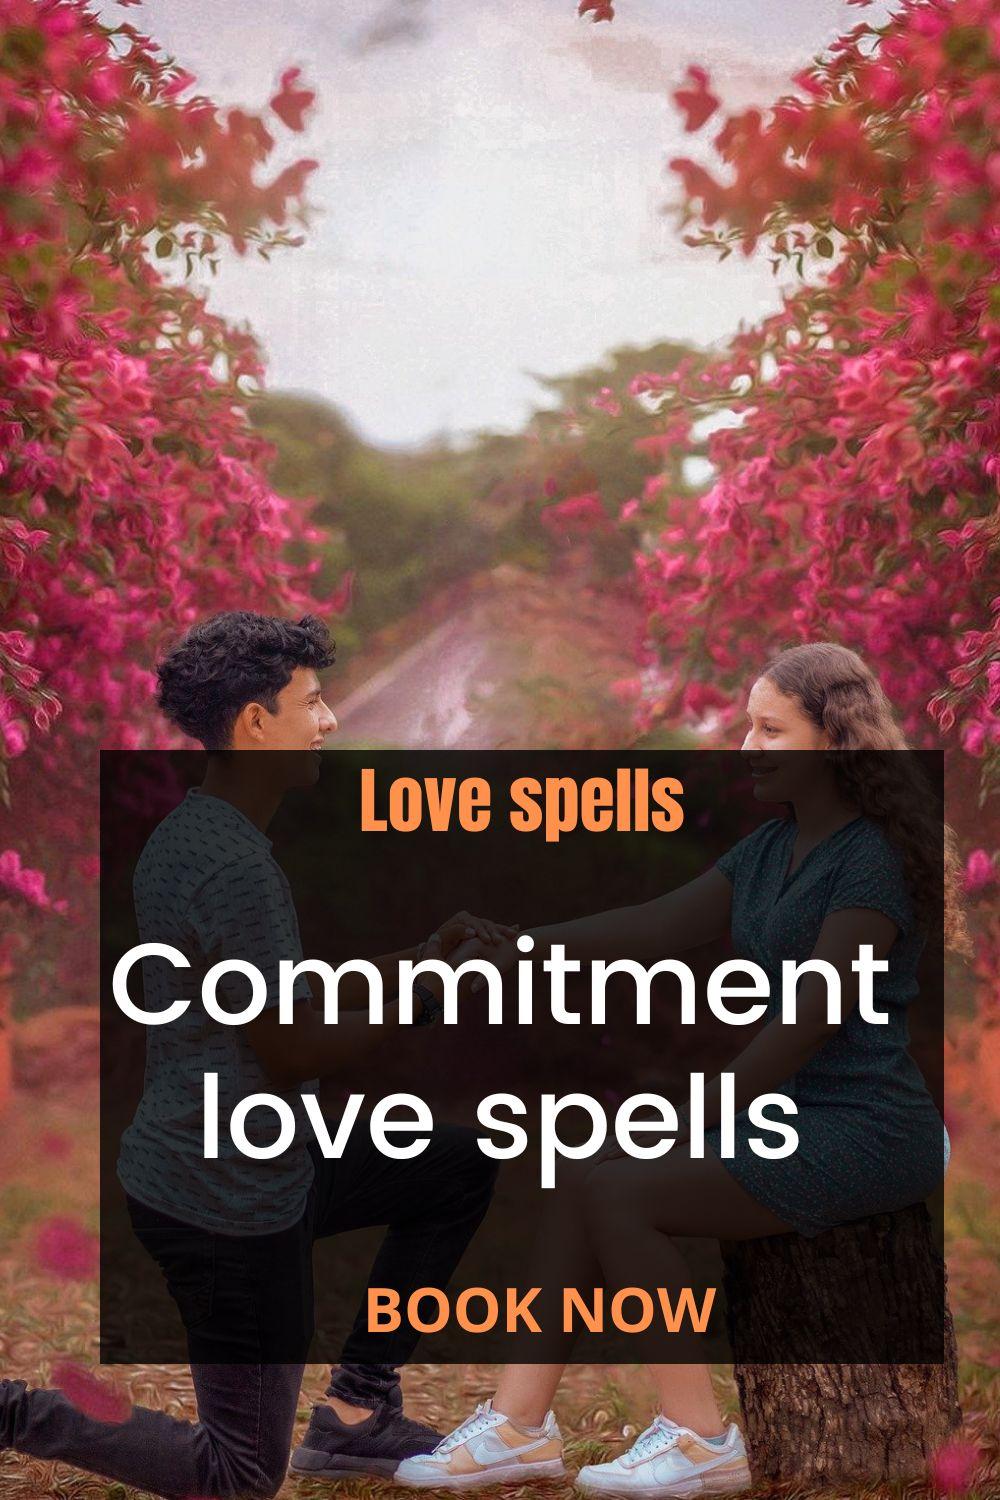 Commitment love spells